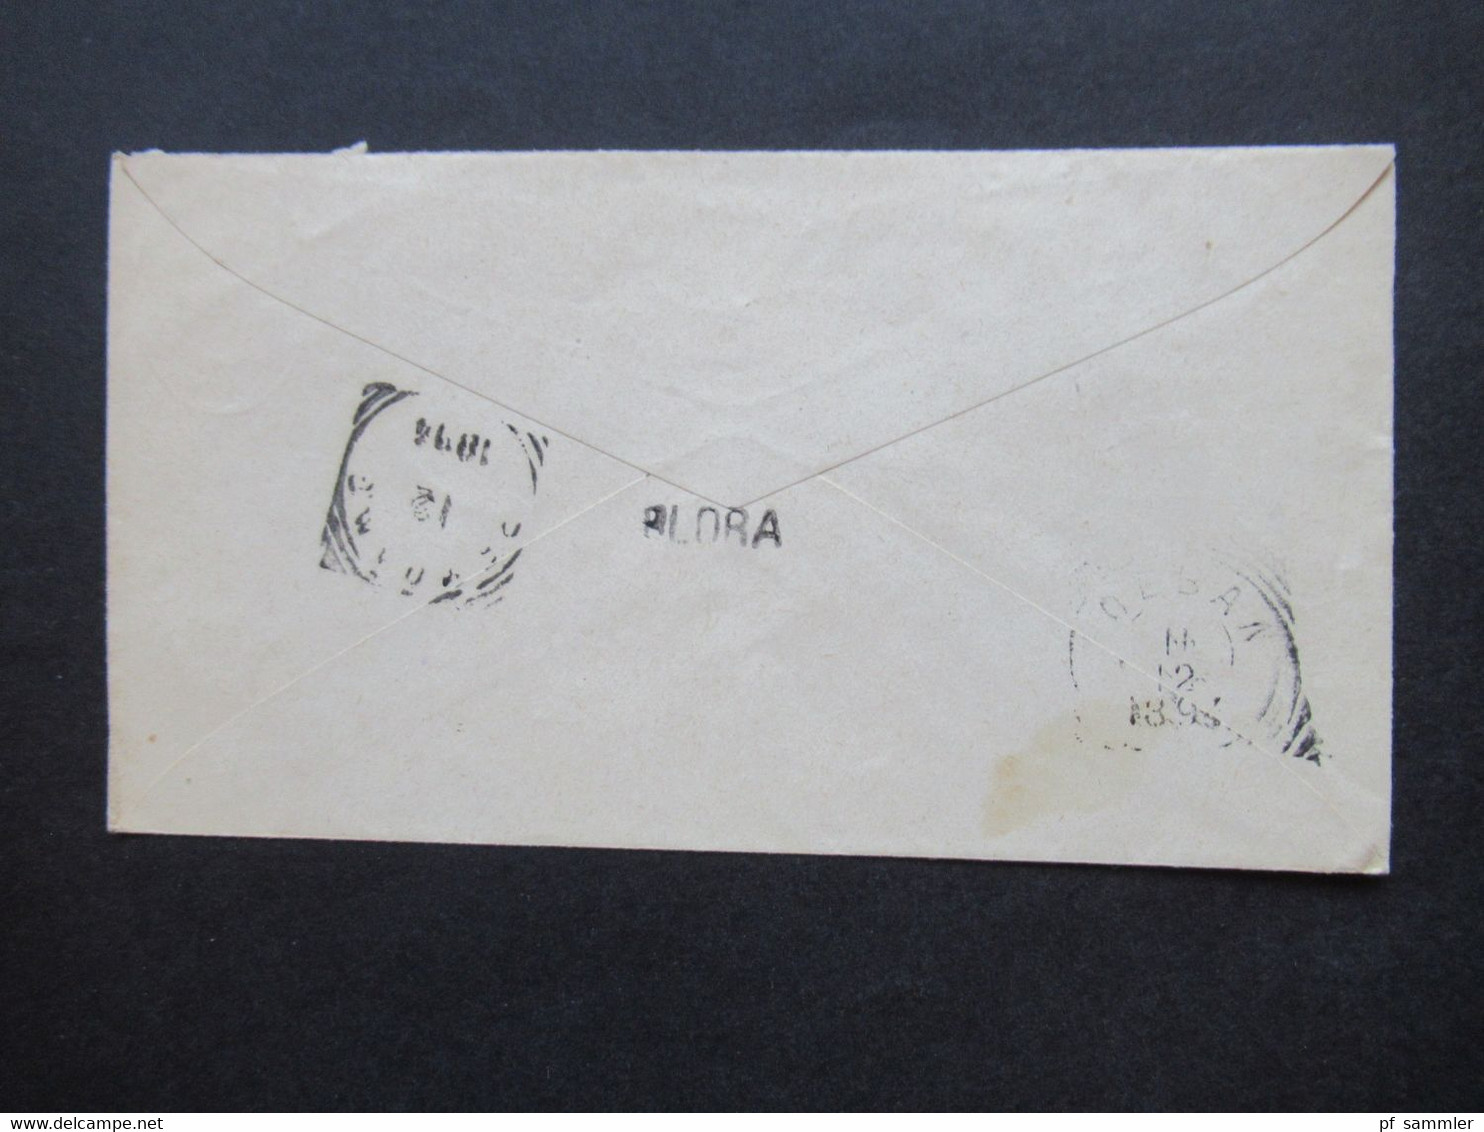 Niederländisch Indien 1894 GA Umschlag Mit 4 Stempeln U.a. Bodjonegoro Nach Blaza Gesendet Auslandsbrief - Netherlands Indies